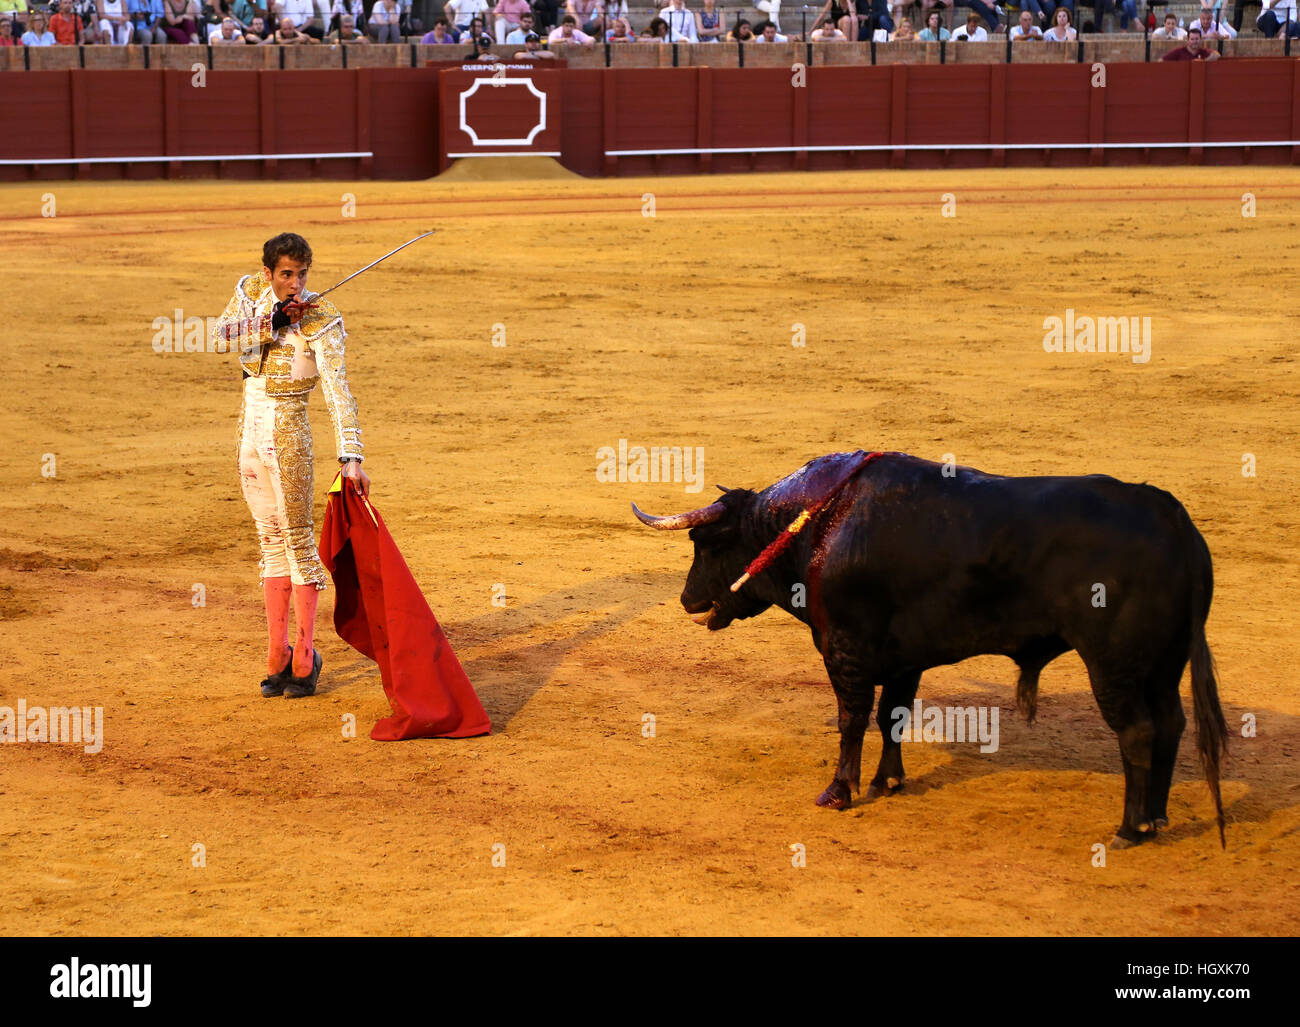 Las corridas de toros en el ámbito español Foto de stock